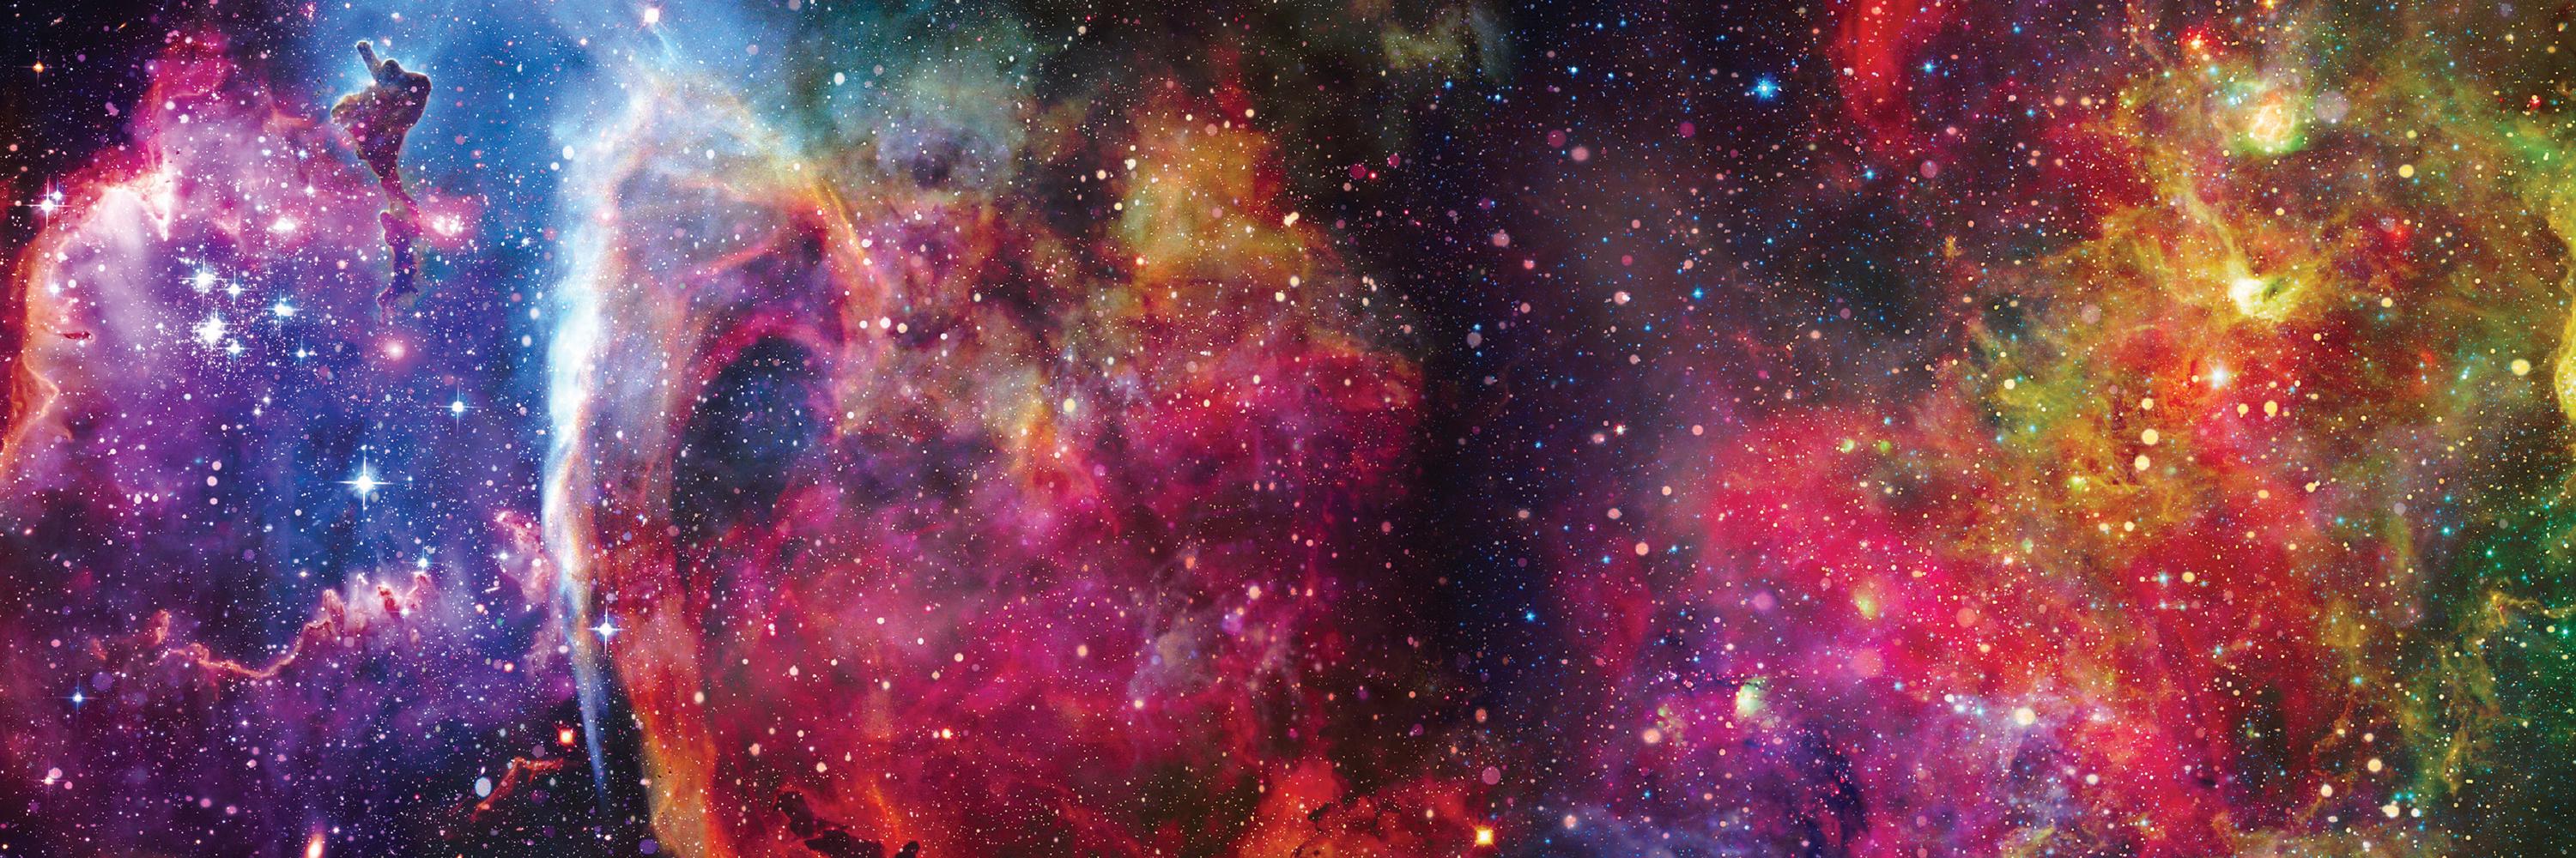 Пазлы трехслойные Interdruk Galaxy 1, панорамные, 1000 элементов - фото 3